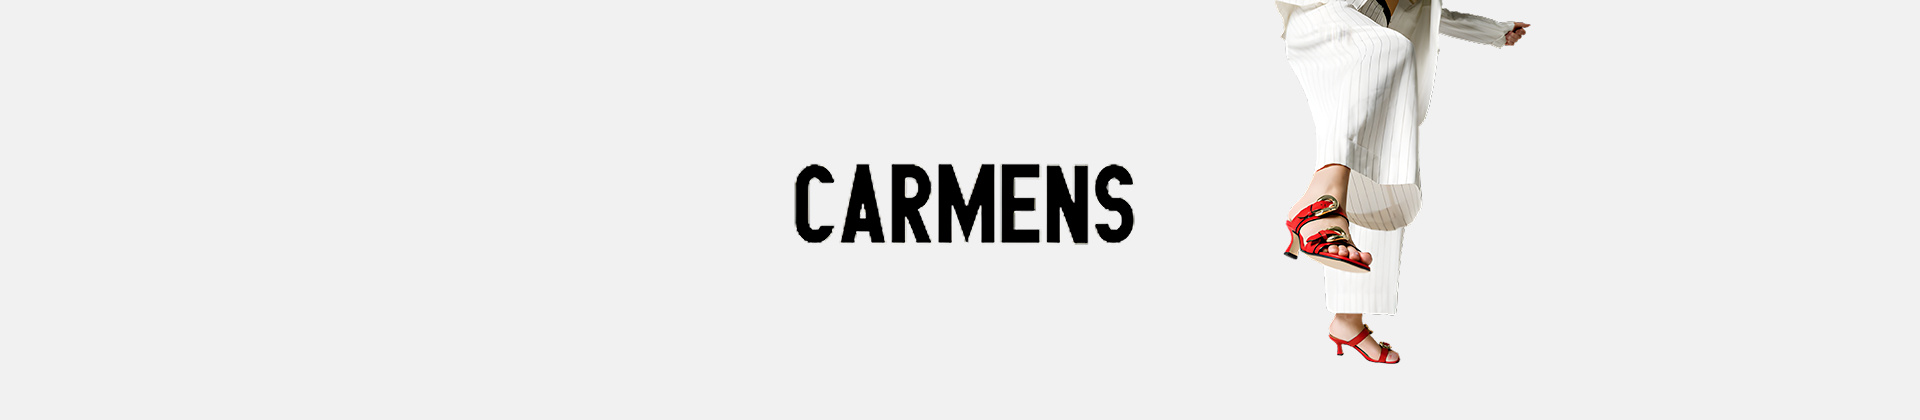 Carmens women's shoes online